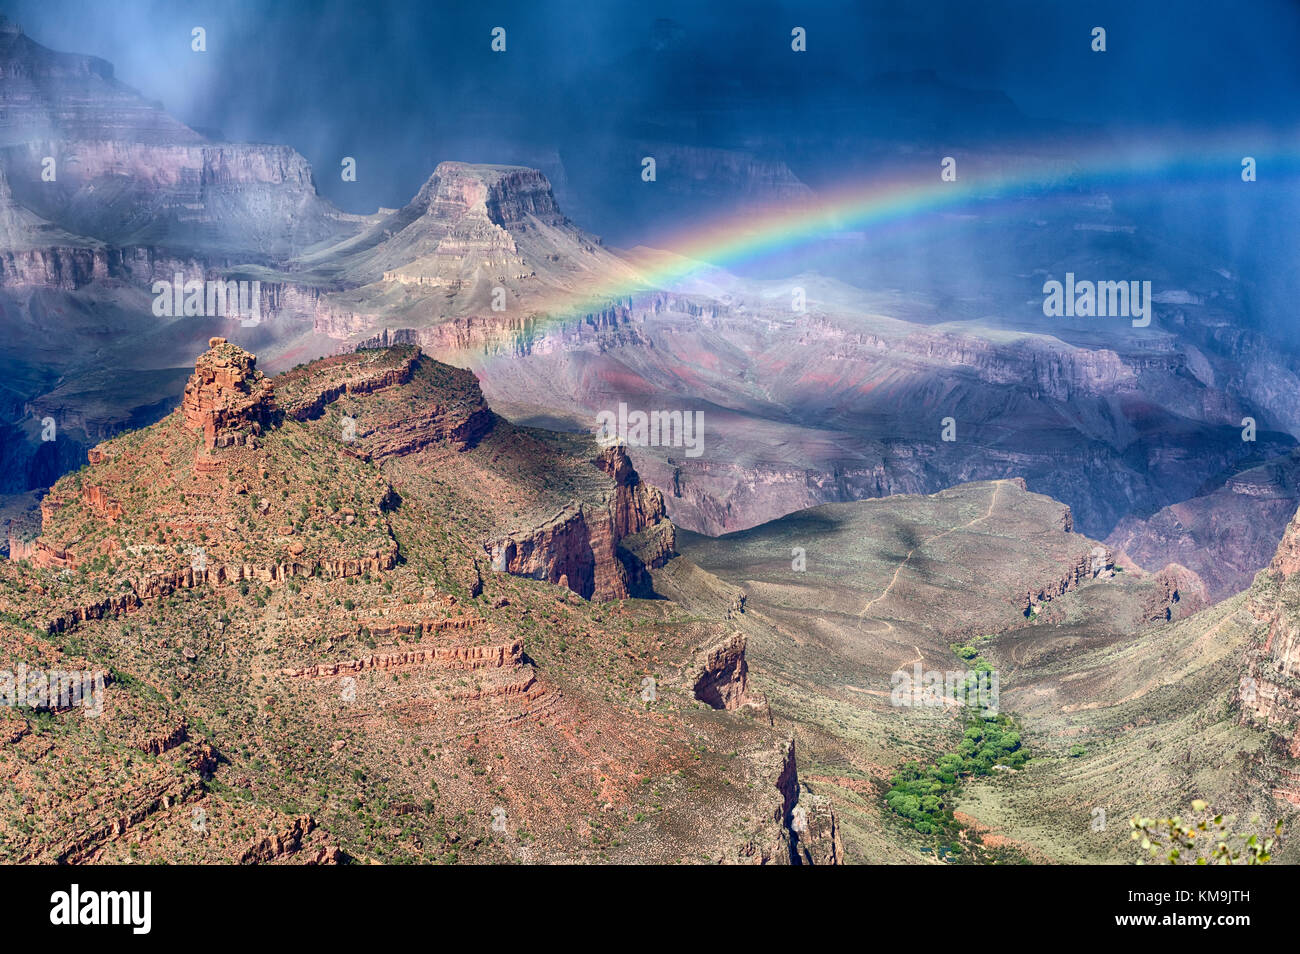 Parco nazionale del Grand Canyon in Arizona, cambio del tempo con improvvisi piovaschi e pioggia, formando un arcobaleno attraverso il canyon Foto Stock